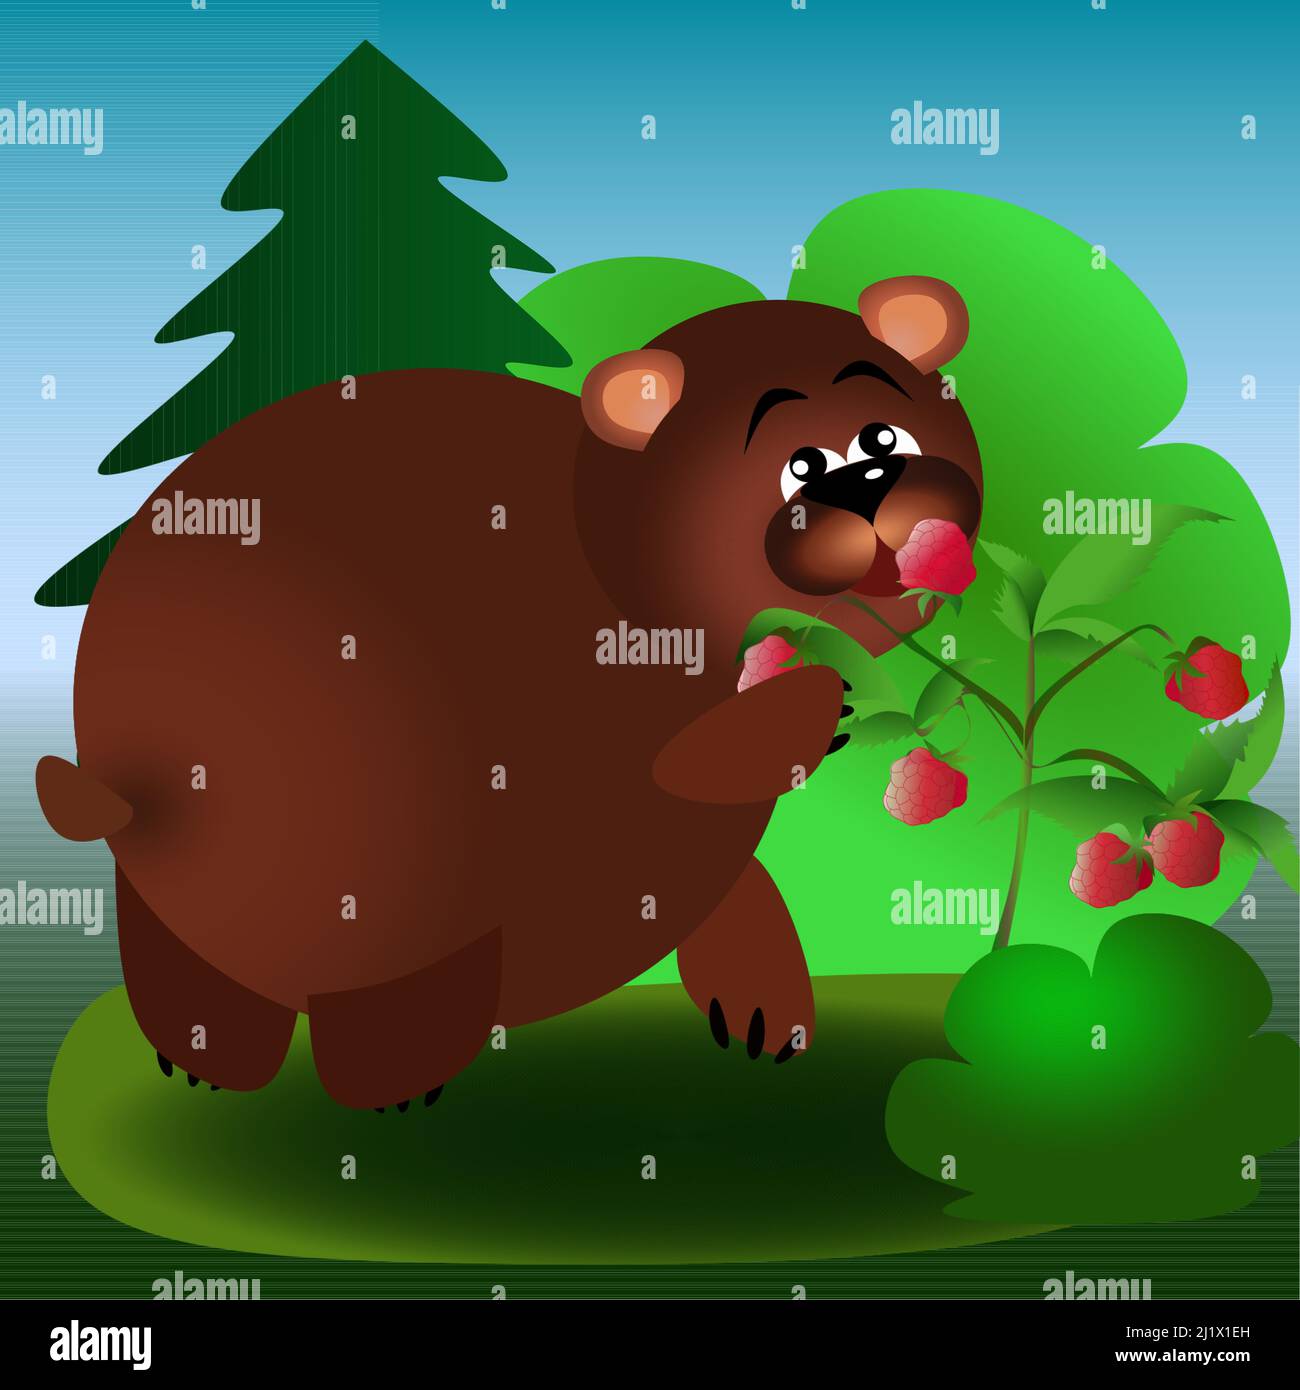 Finden Sie 7 Unterschiede Braunbär im Wald essen Himbeeren Kinder Illustration Stock Vektor